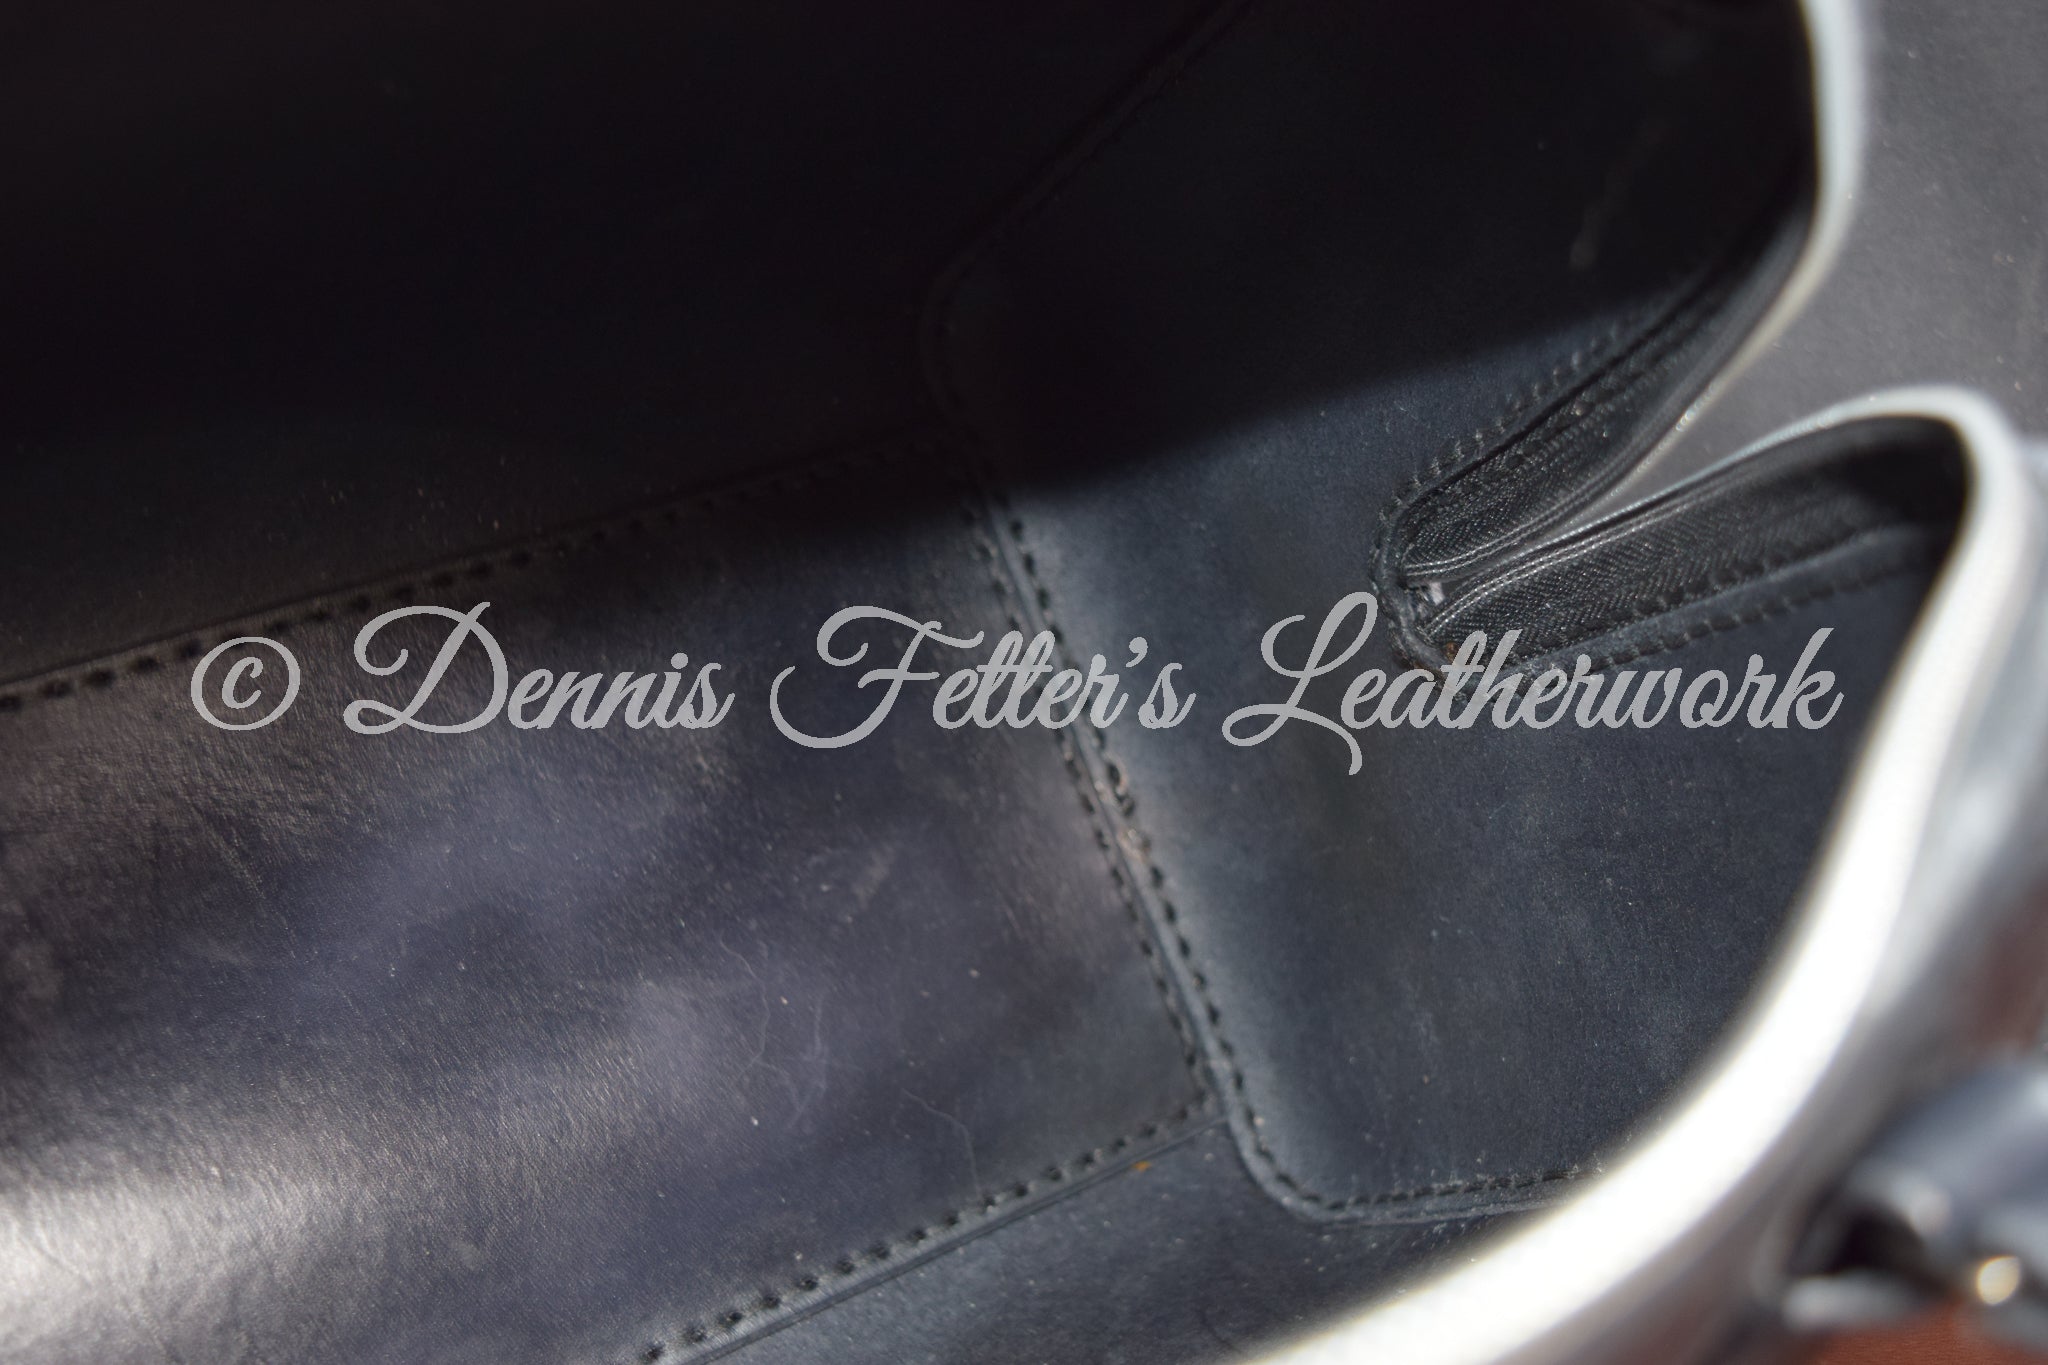 Plague Doctor Bag Leather – Dennis Fetter's Leatherwork